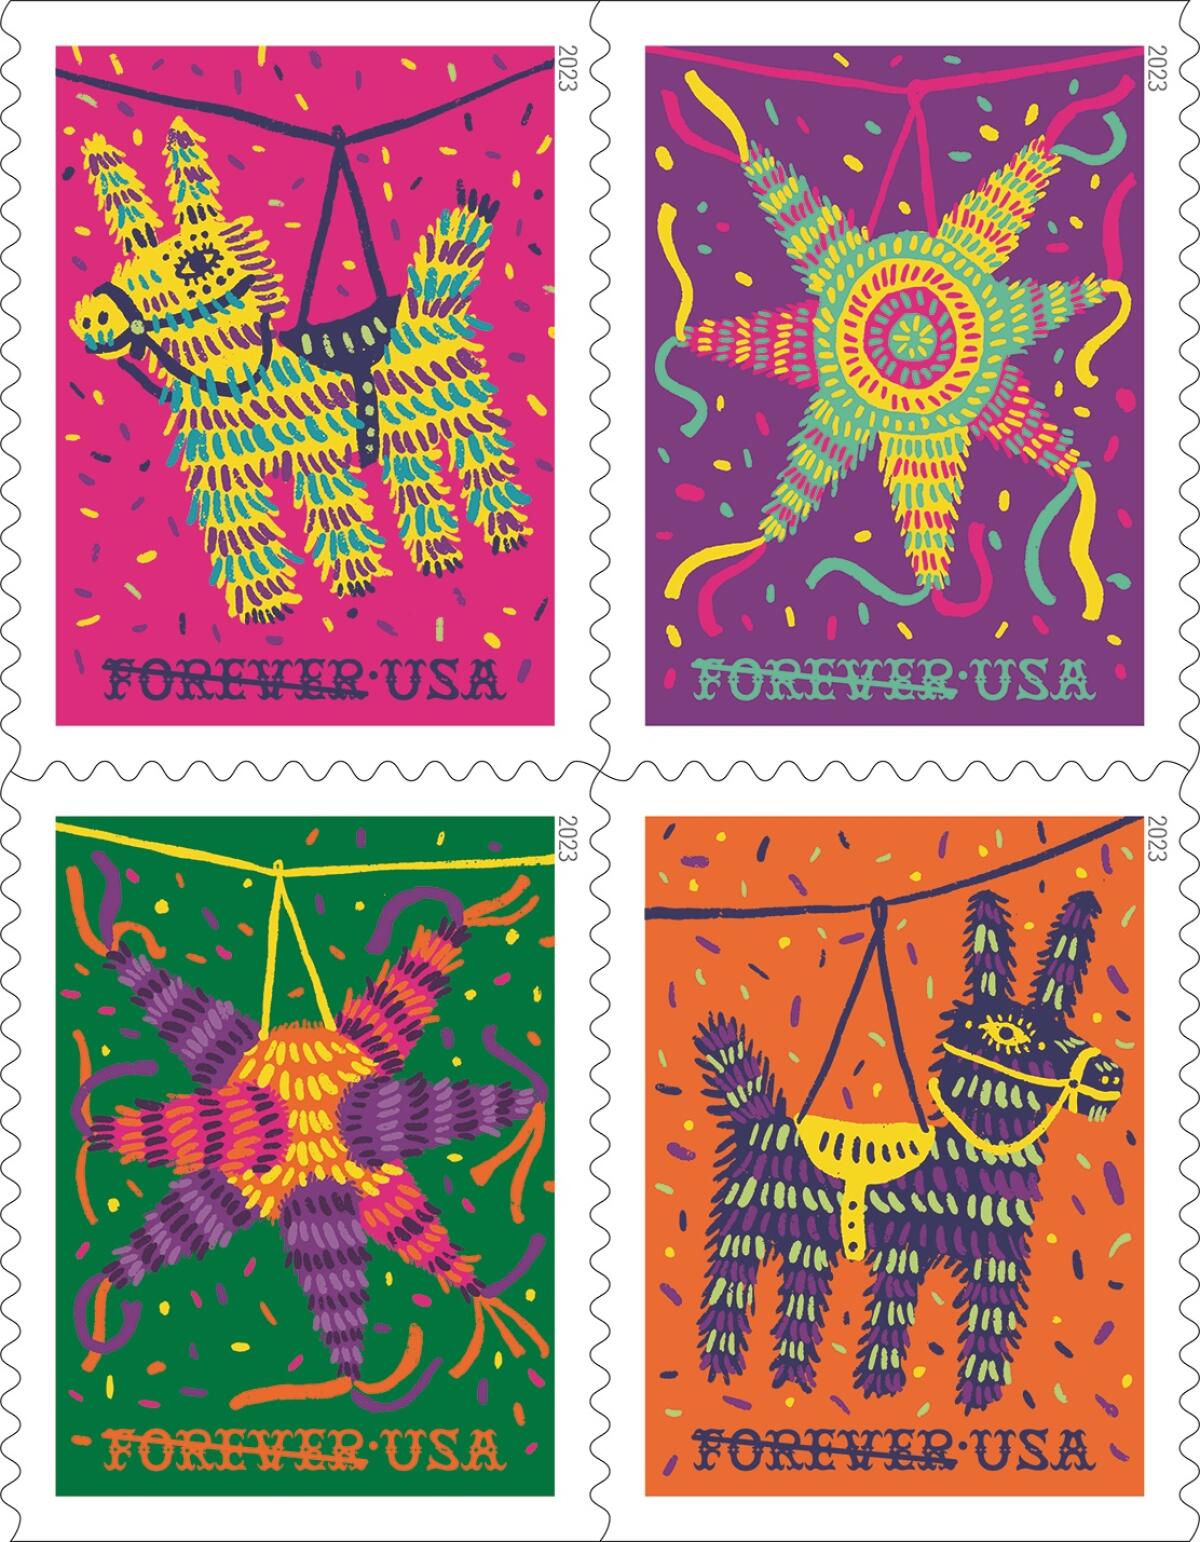 EEUU festeja antigua tradición hispana con timbres postales de piñatas -  Los Angeles Times